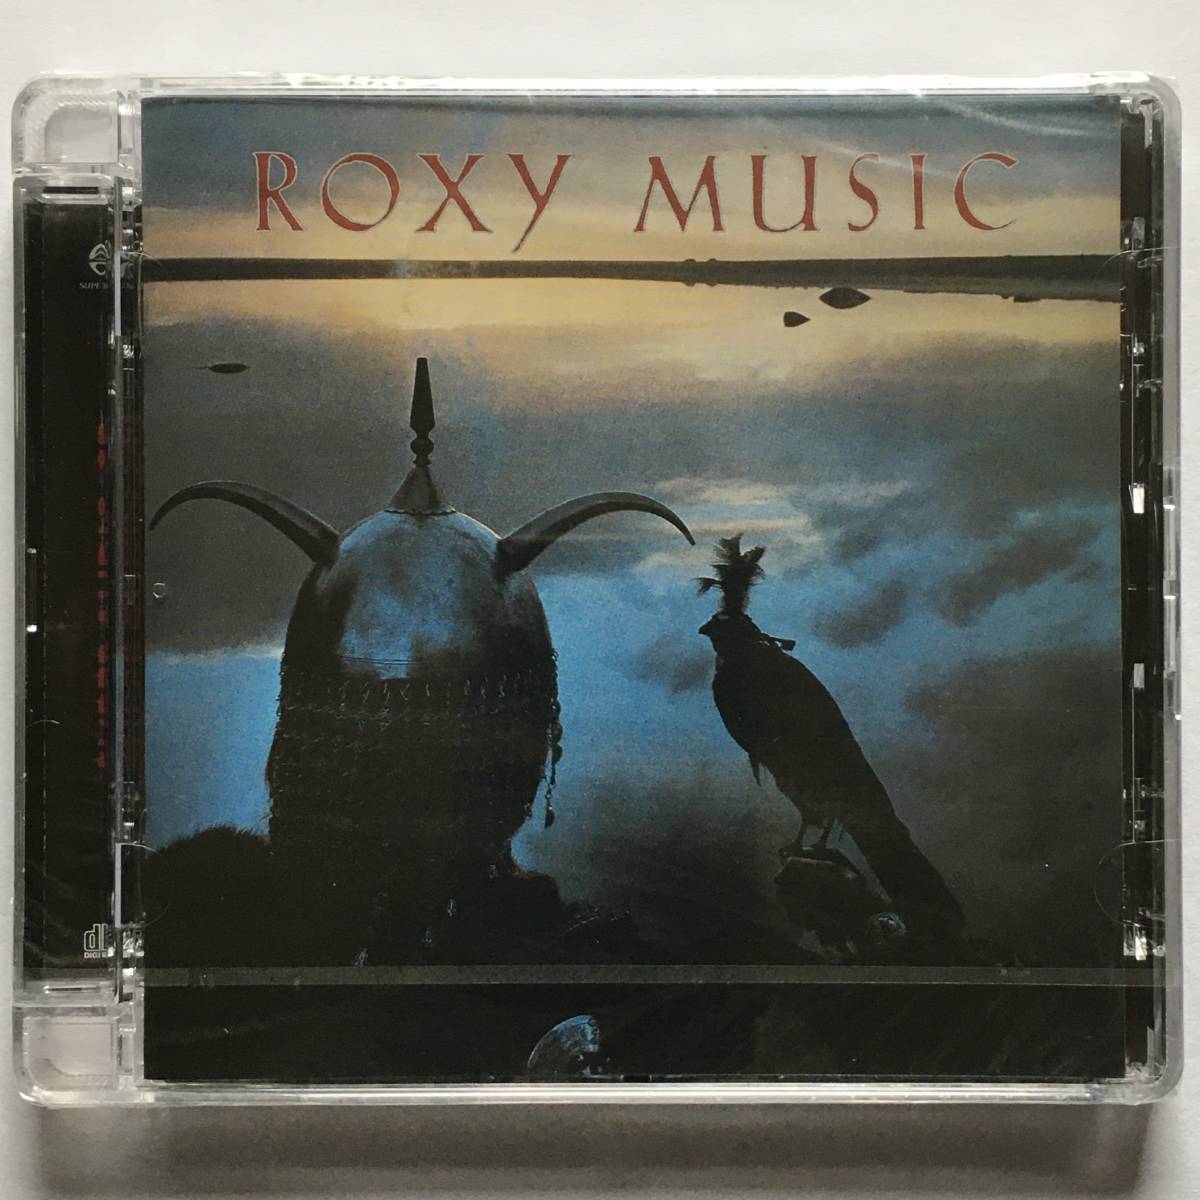 【新品SACD】ROXY MUSIC「AVALON」UK VIRGIN ROXYSACD9 MULTI-CHANNEL HYBRID SACD シールド未開封 SEALED!!